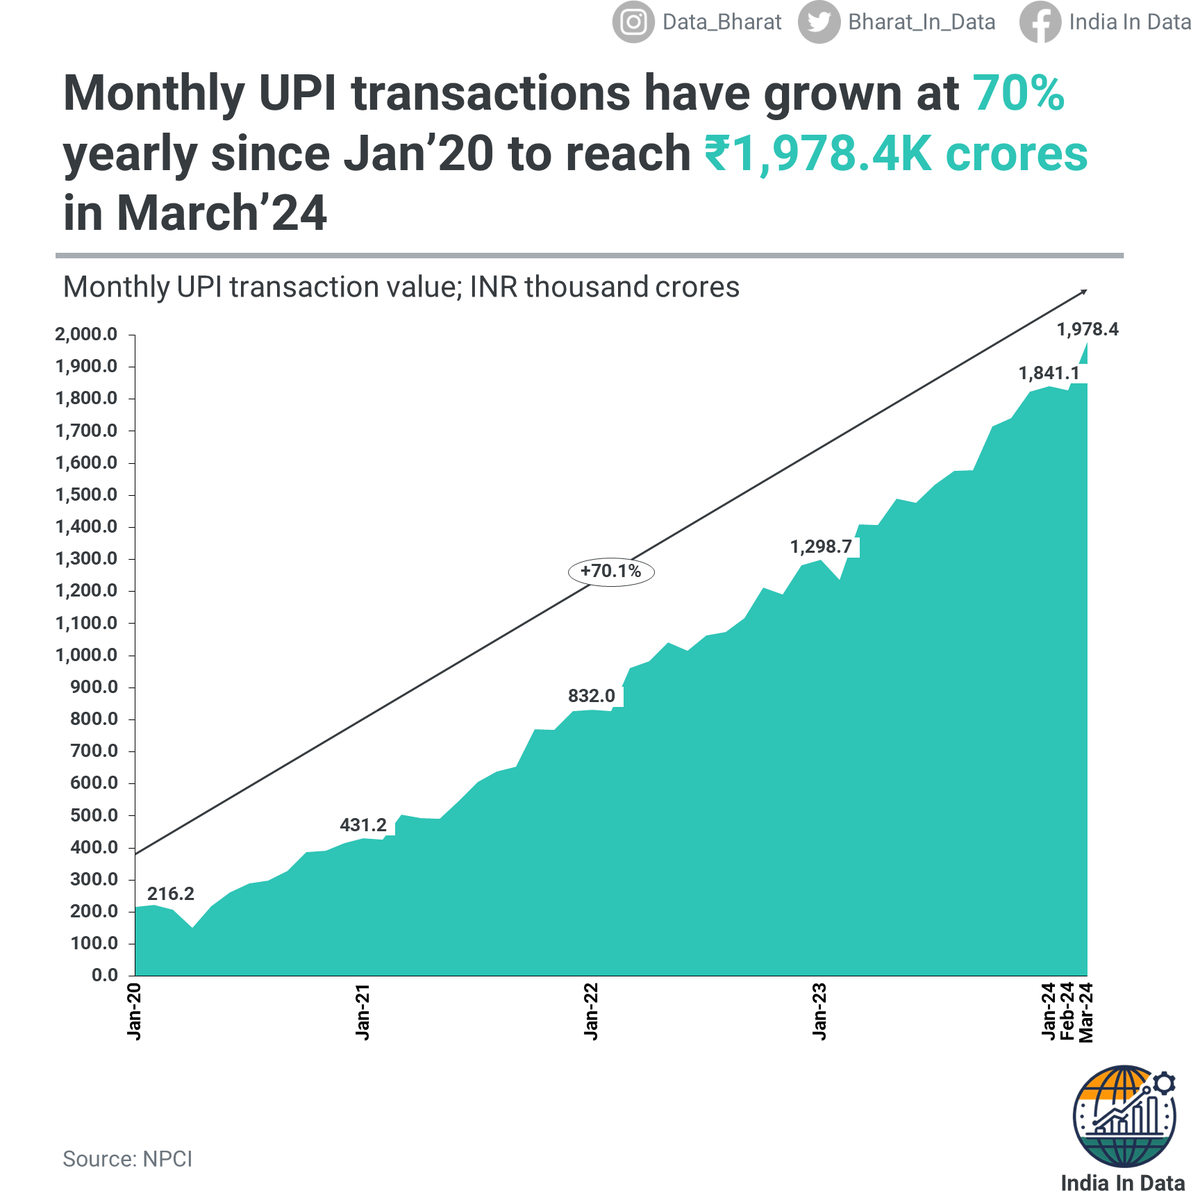 Monthly UPI transactions have grown at a CAGR of 70% since Jan'20, to hit ₹1,978K crores in March 2024.

#indiaindata #indiastatistics #gdp #economicdata #economy #ındıaneconomy #indiaeconomics #upi #upipayments #qrpay #paytm #paytmkaro #phonepe #googlepay #googlepayindia